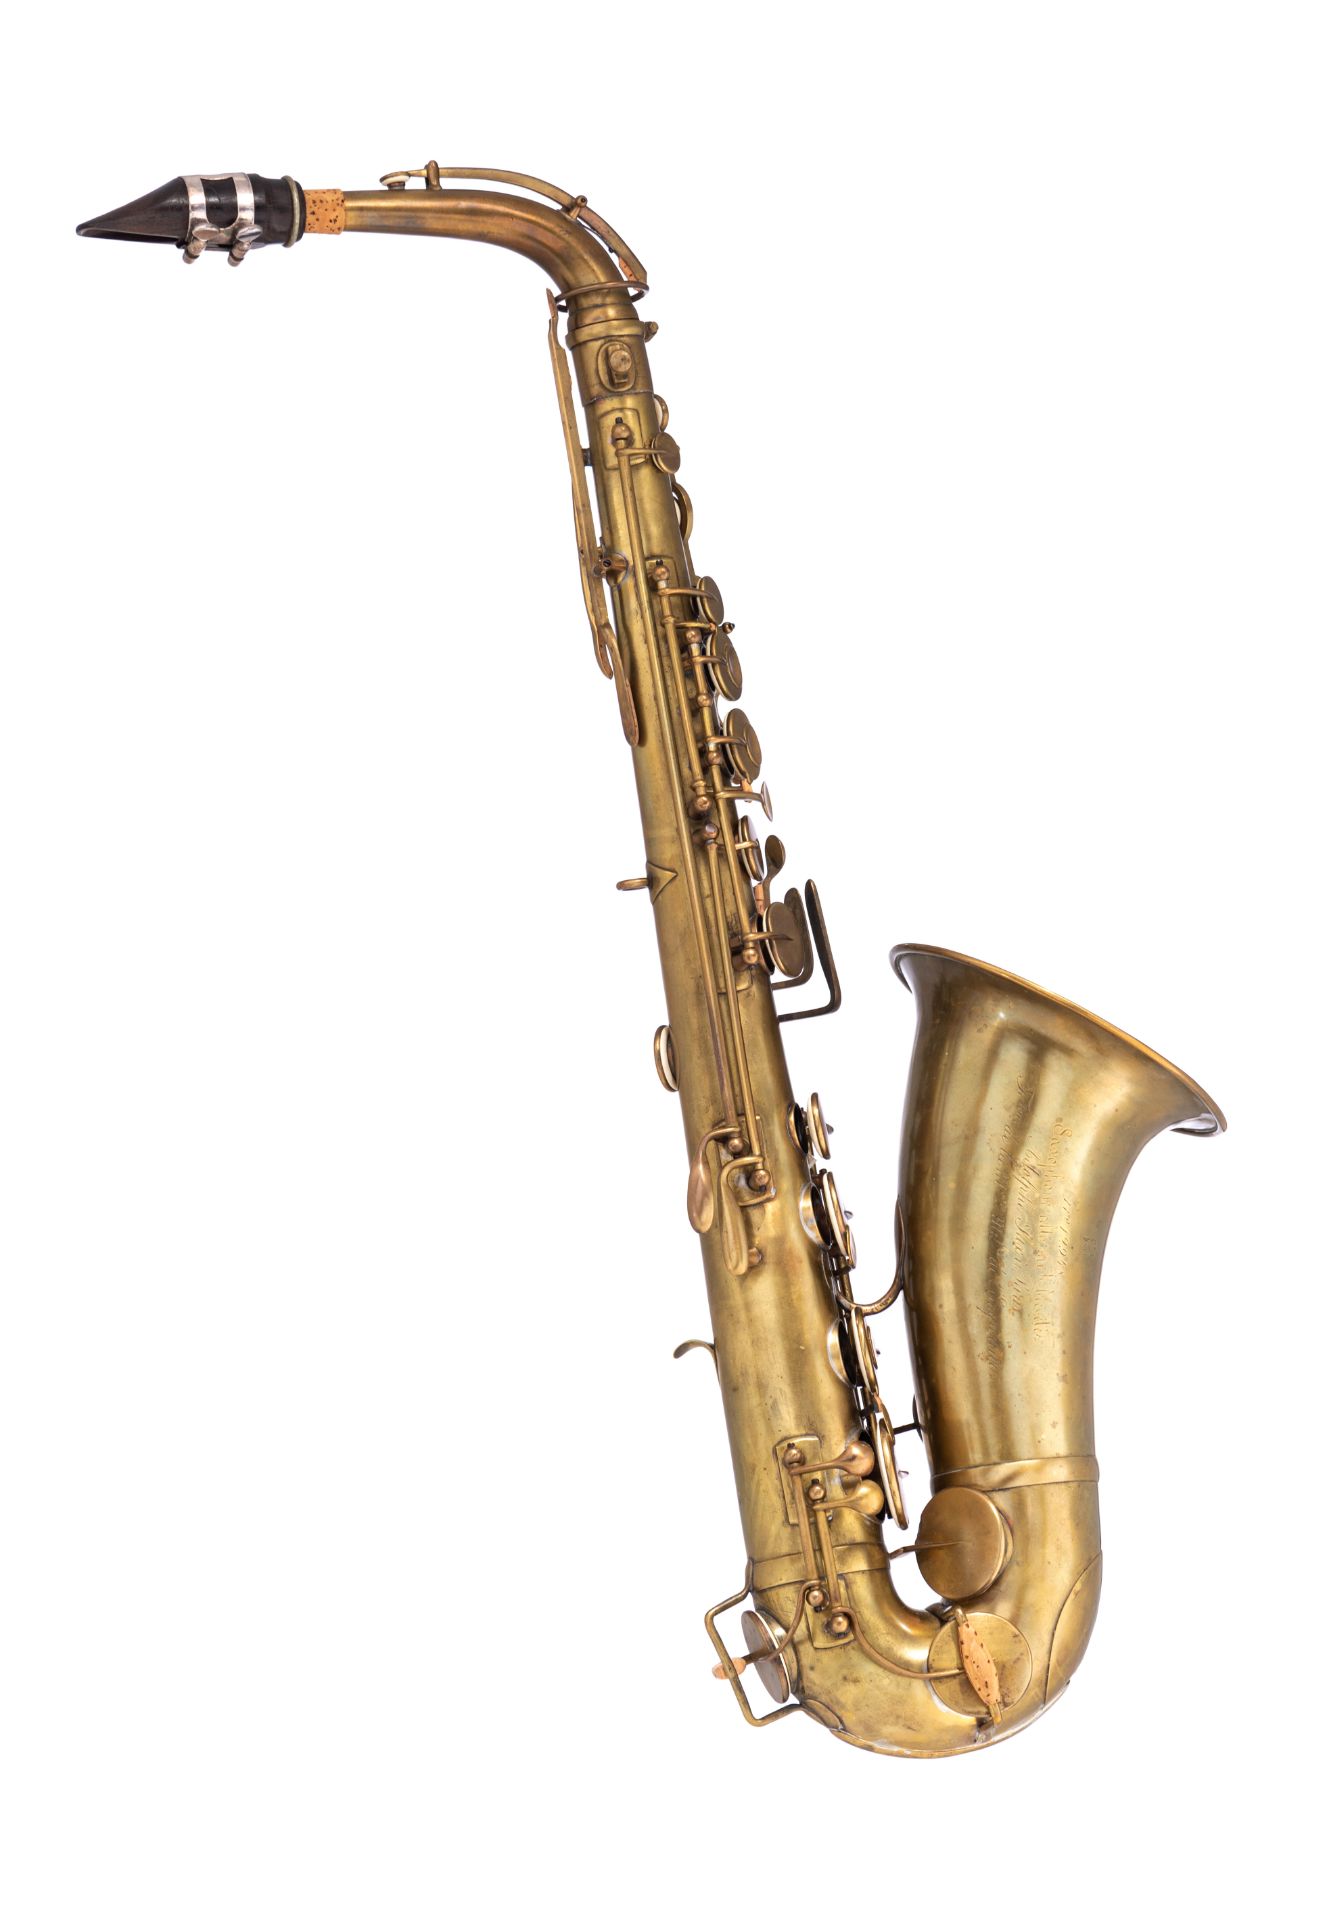 A rare MIB bréveté alto saxophone, serailnr. 12948, date of construction 1855, H 61,5 cm